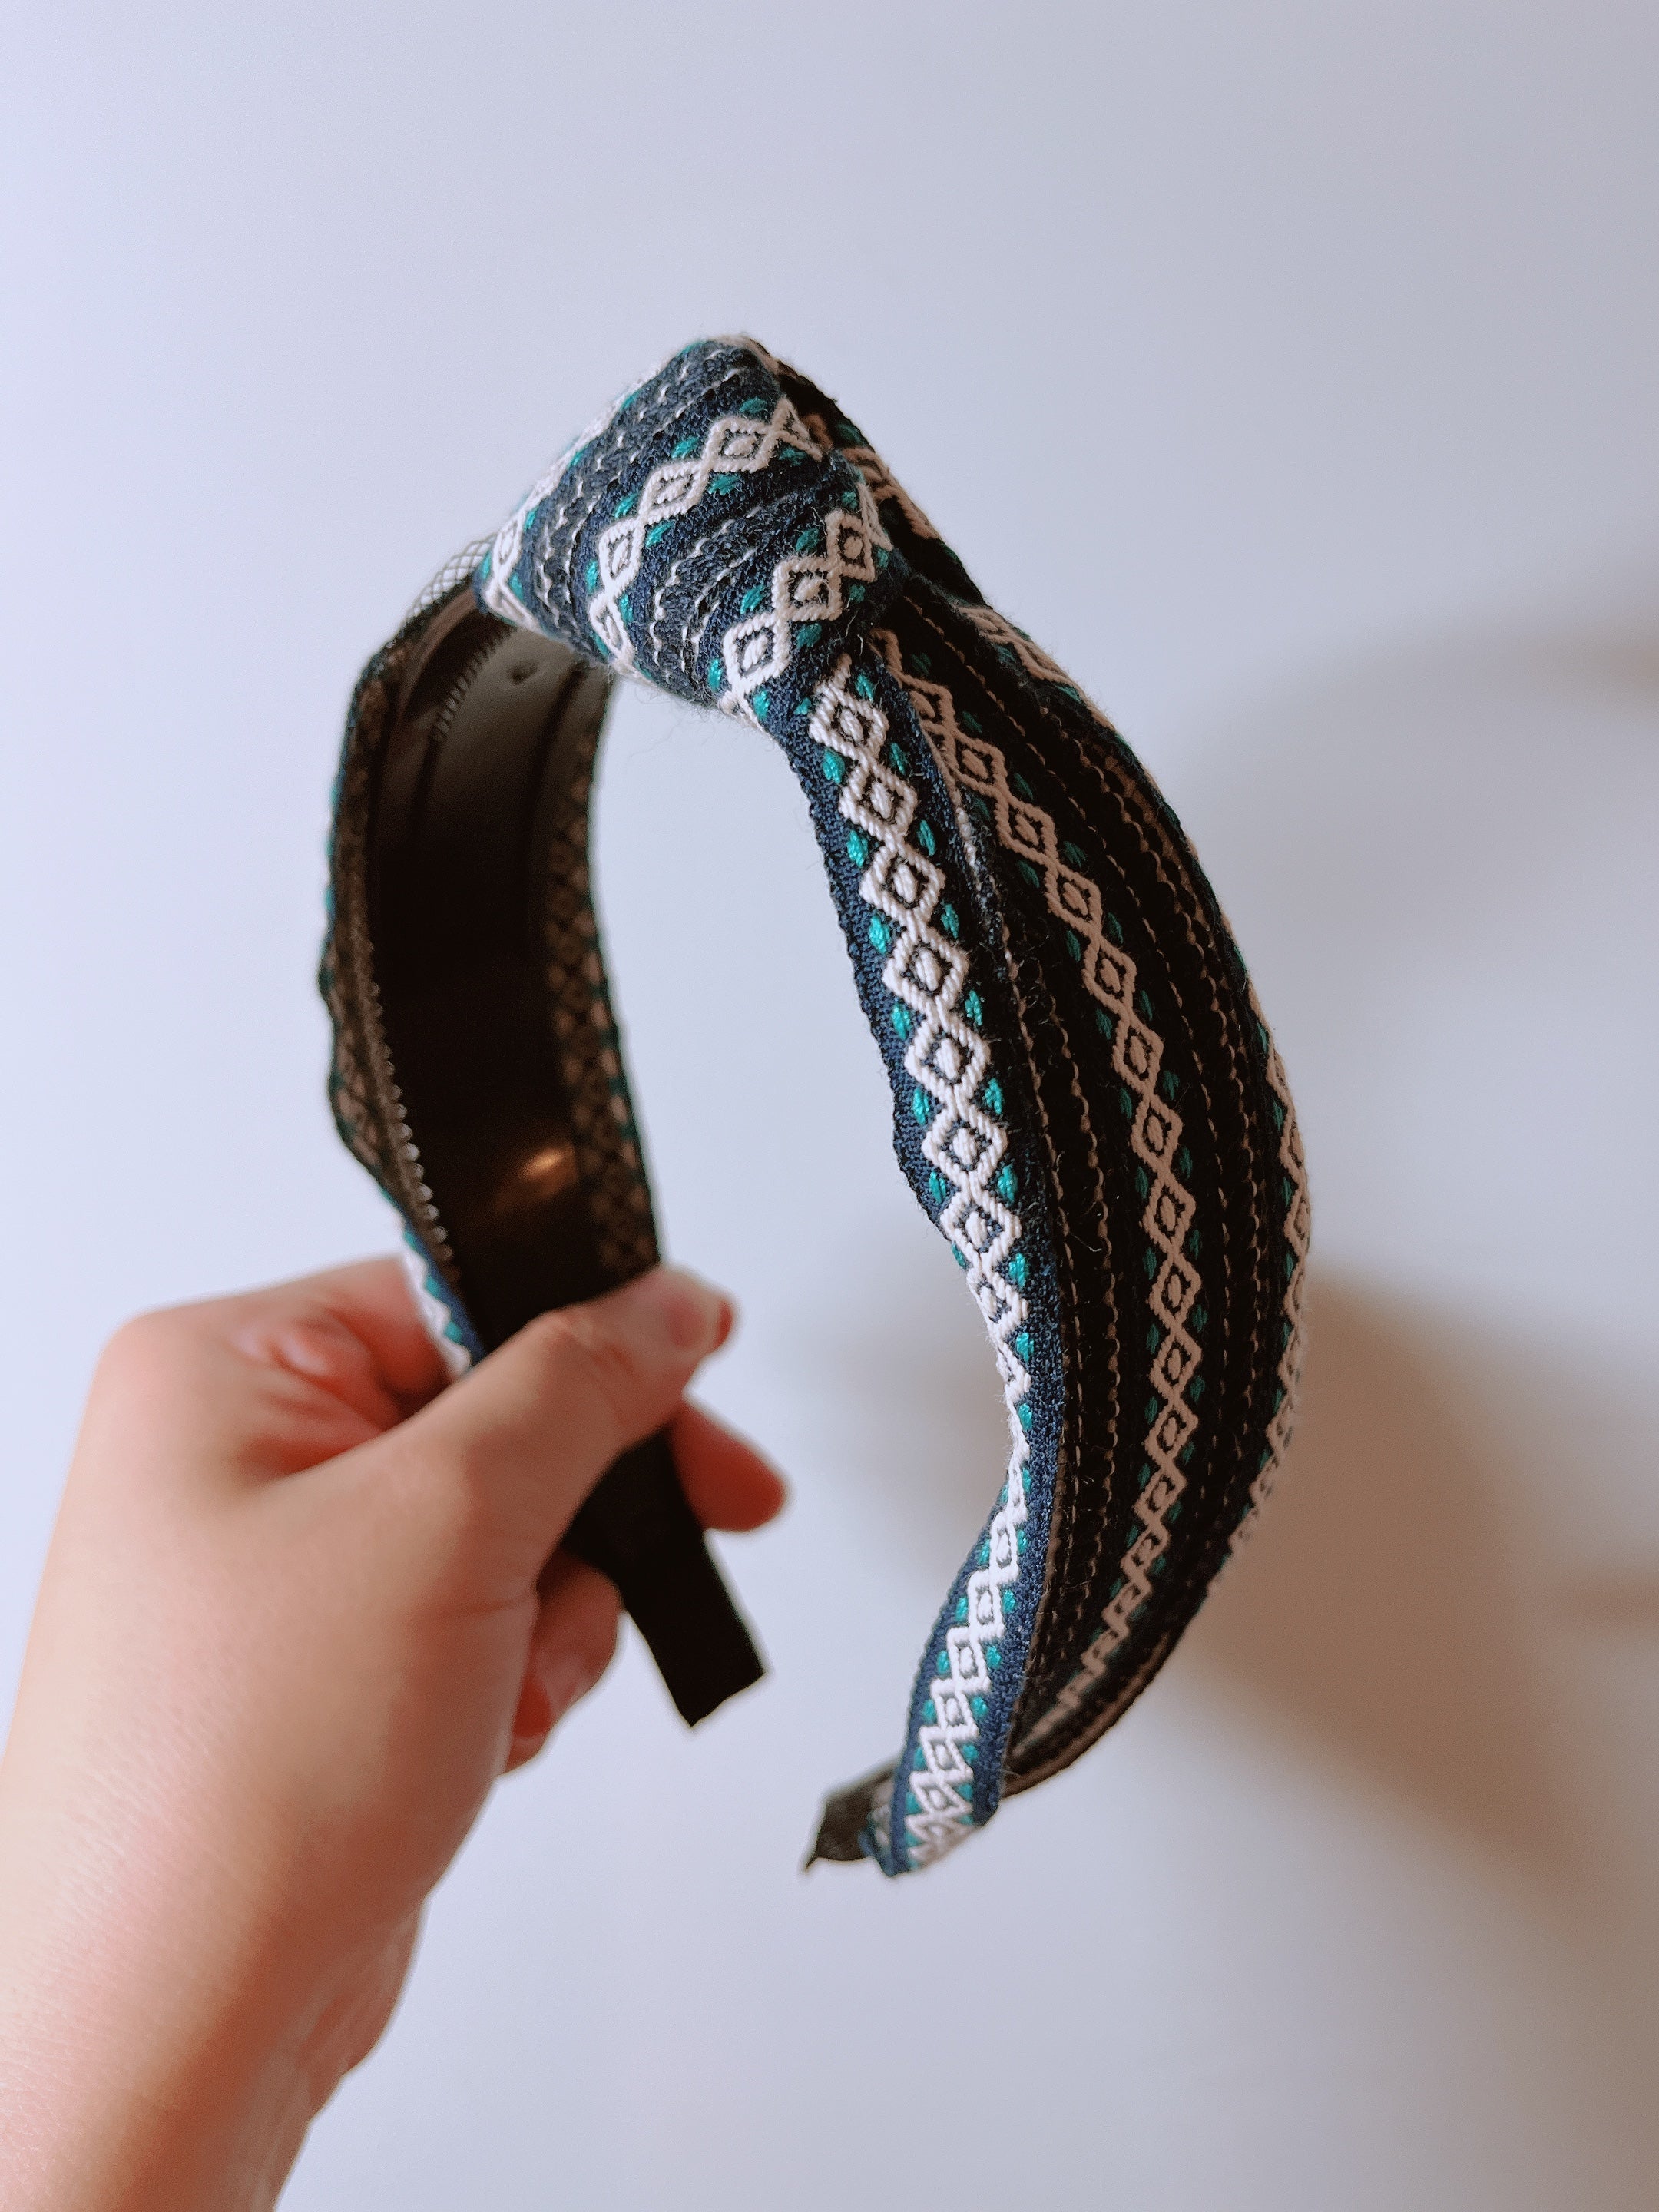 韓式人工髮箍 - 藍黑色民族髮箍